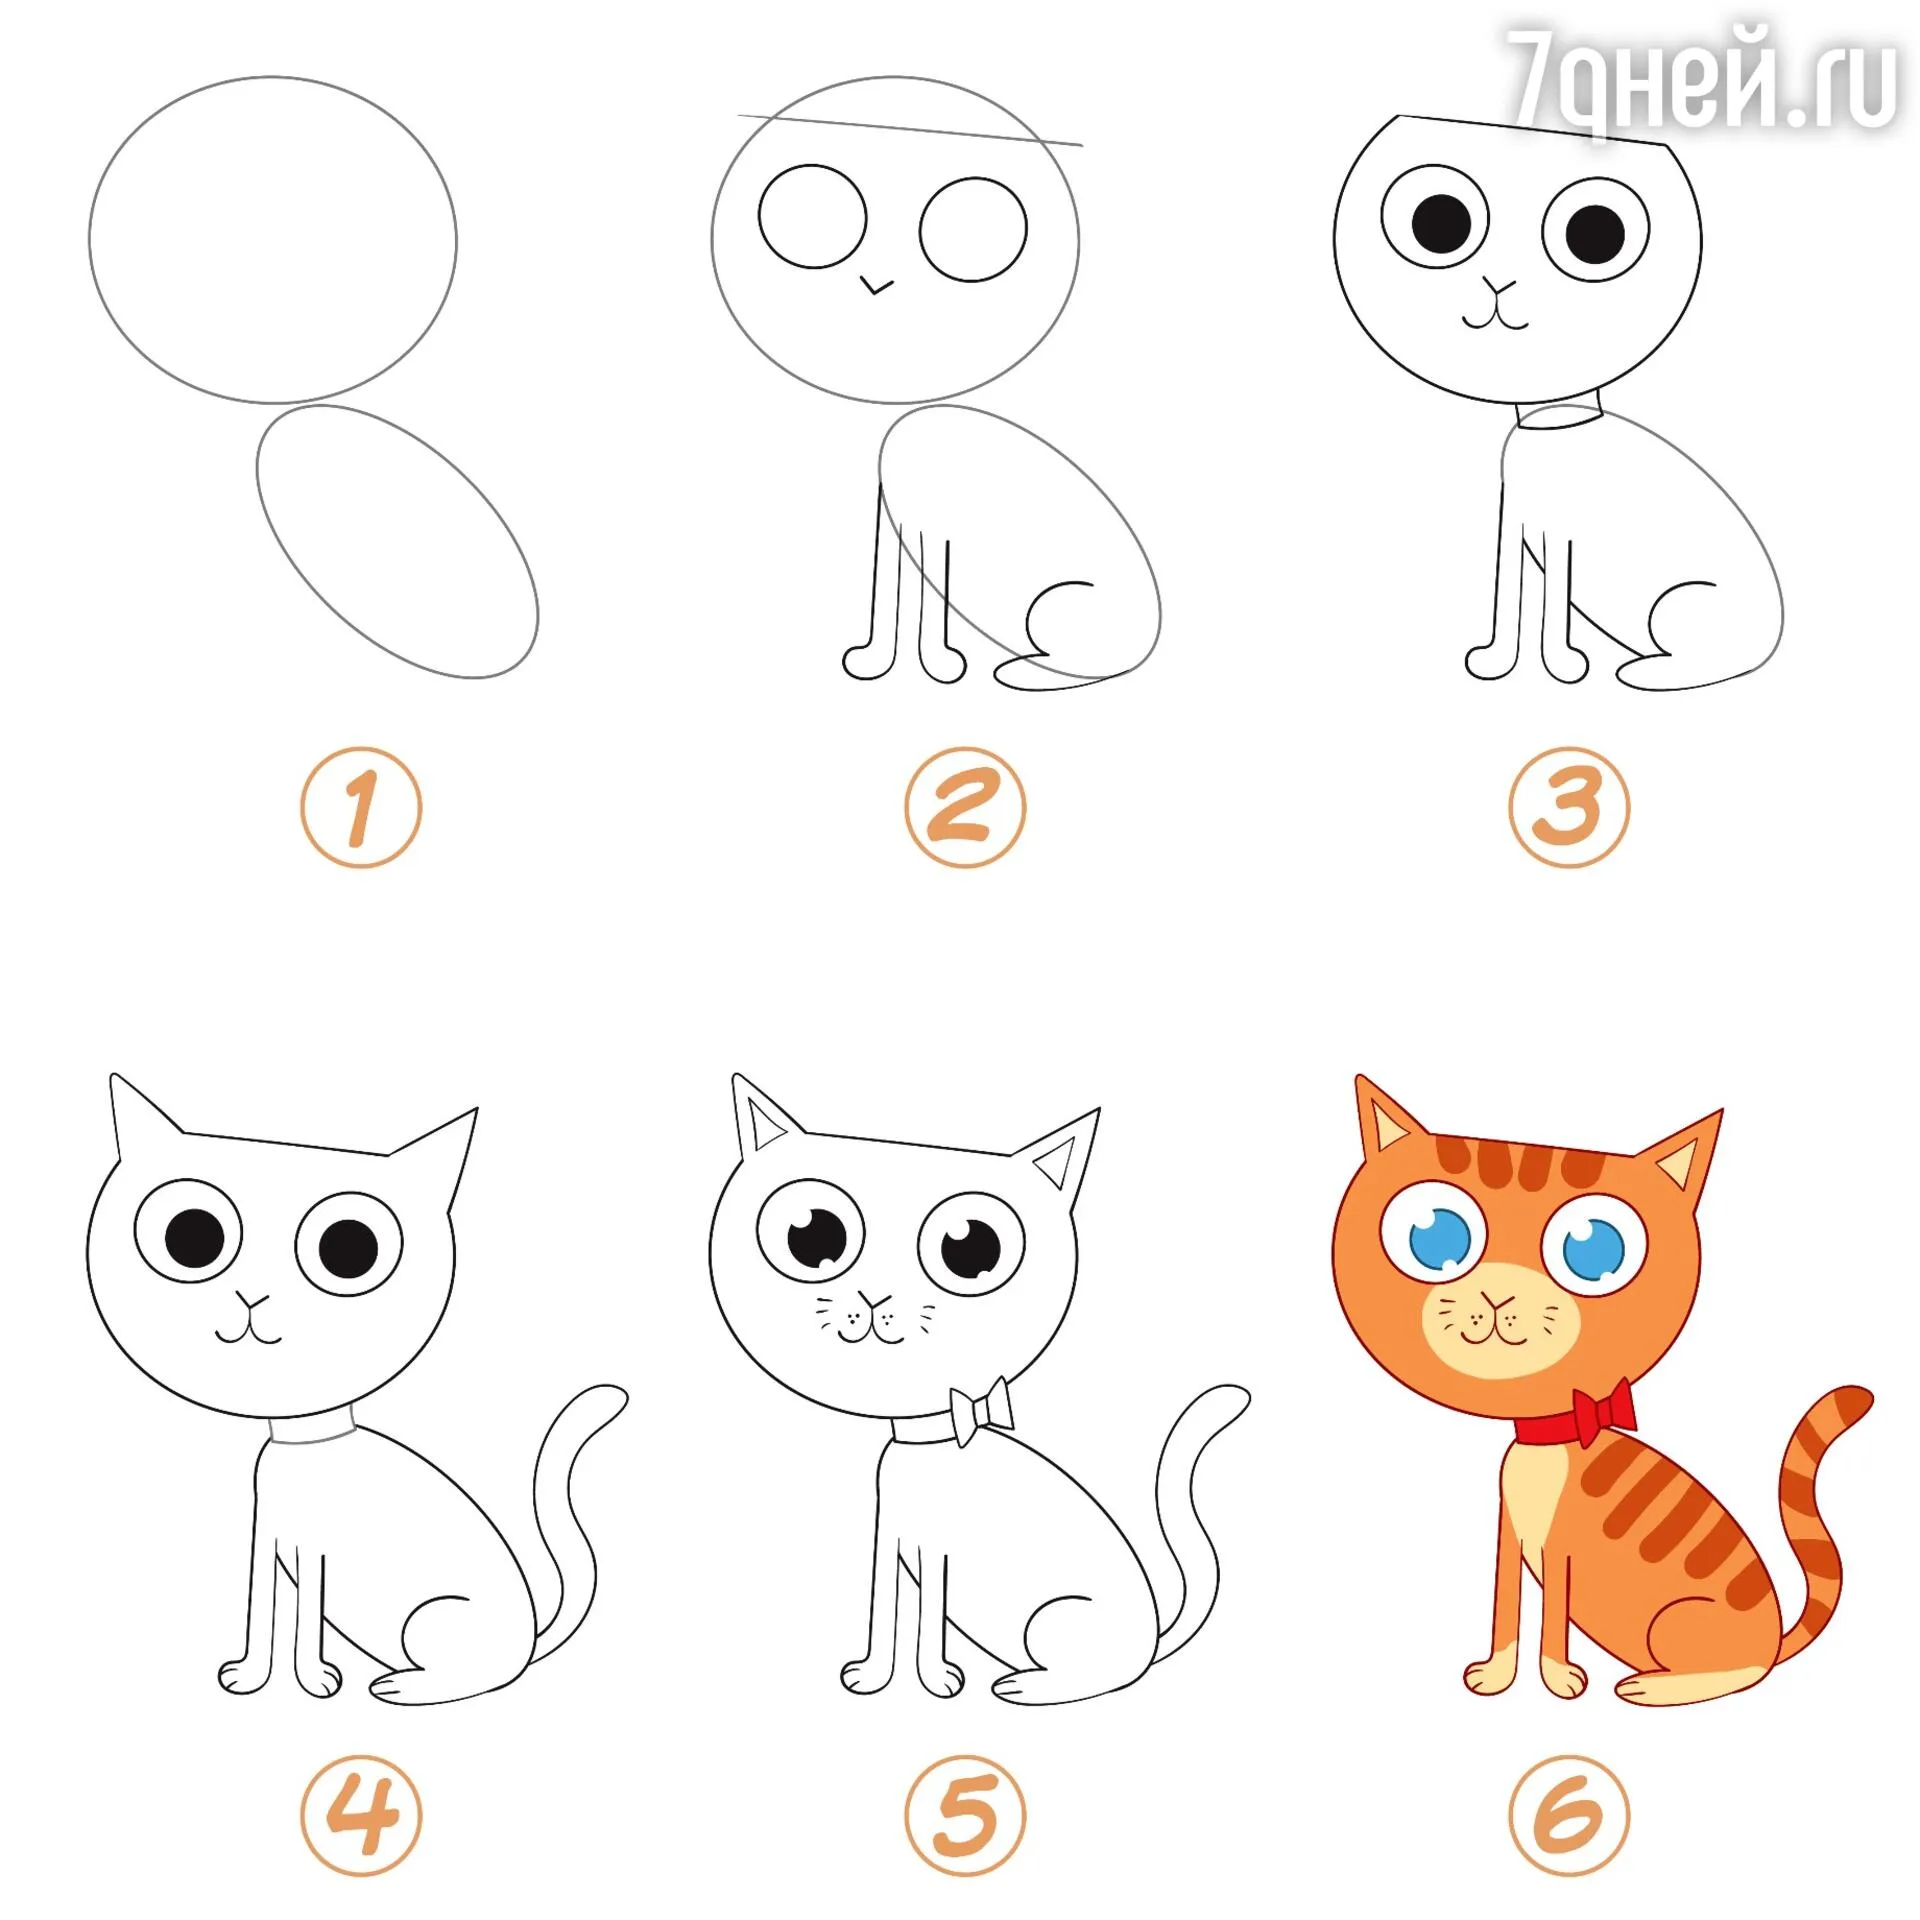 Как нарисовать котика из слова Cat